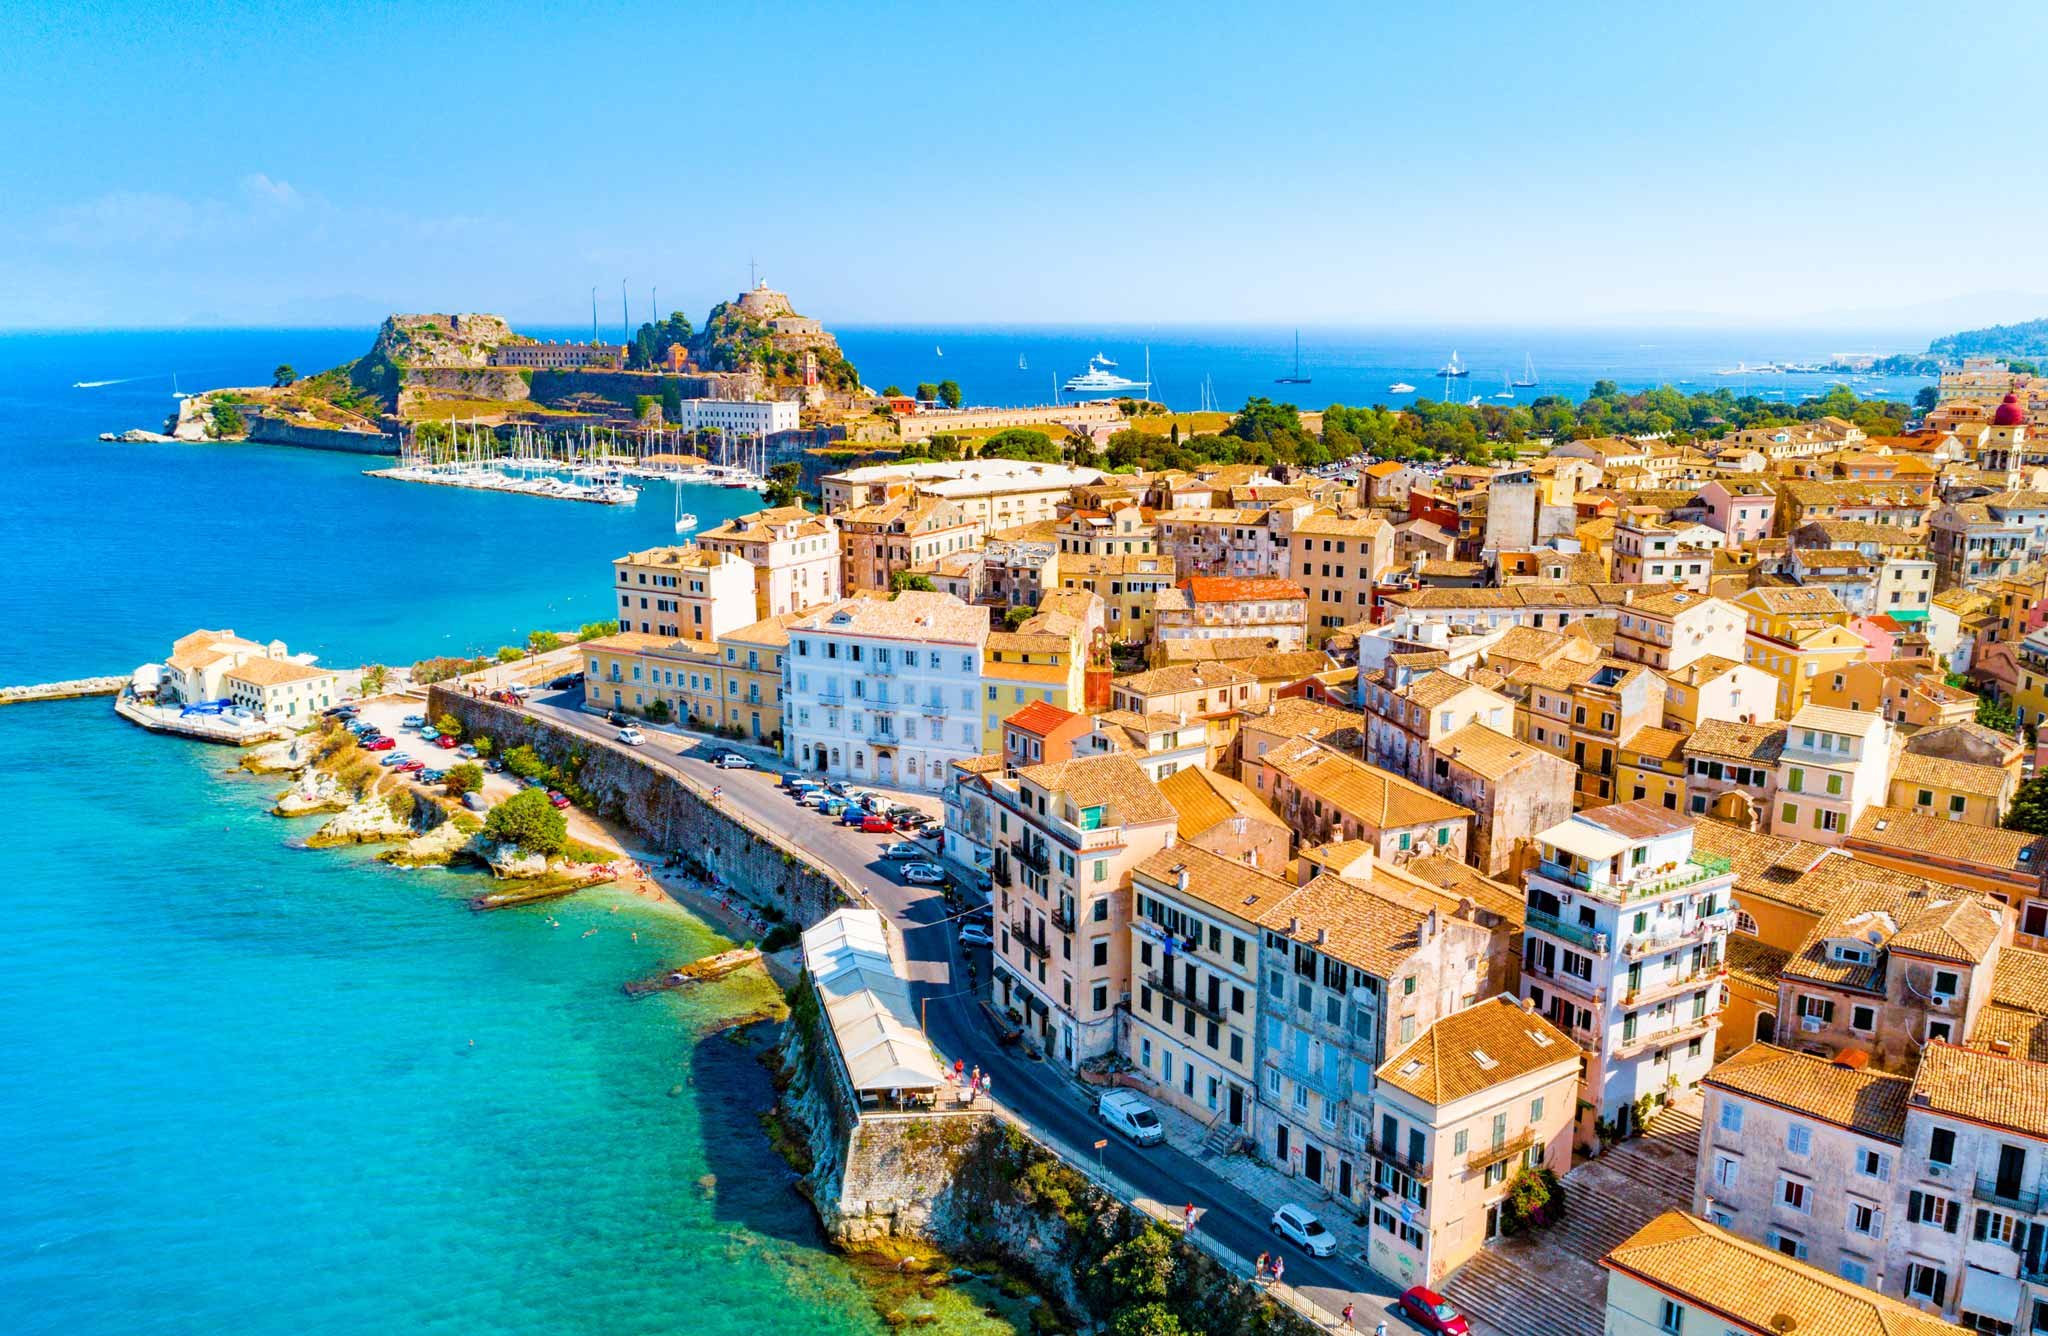 Die Altstadt von Korfu zählt zum UNESCO-Weltkulturerbe.